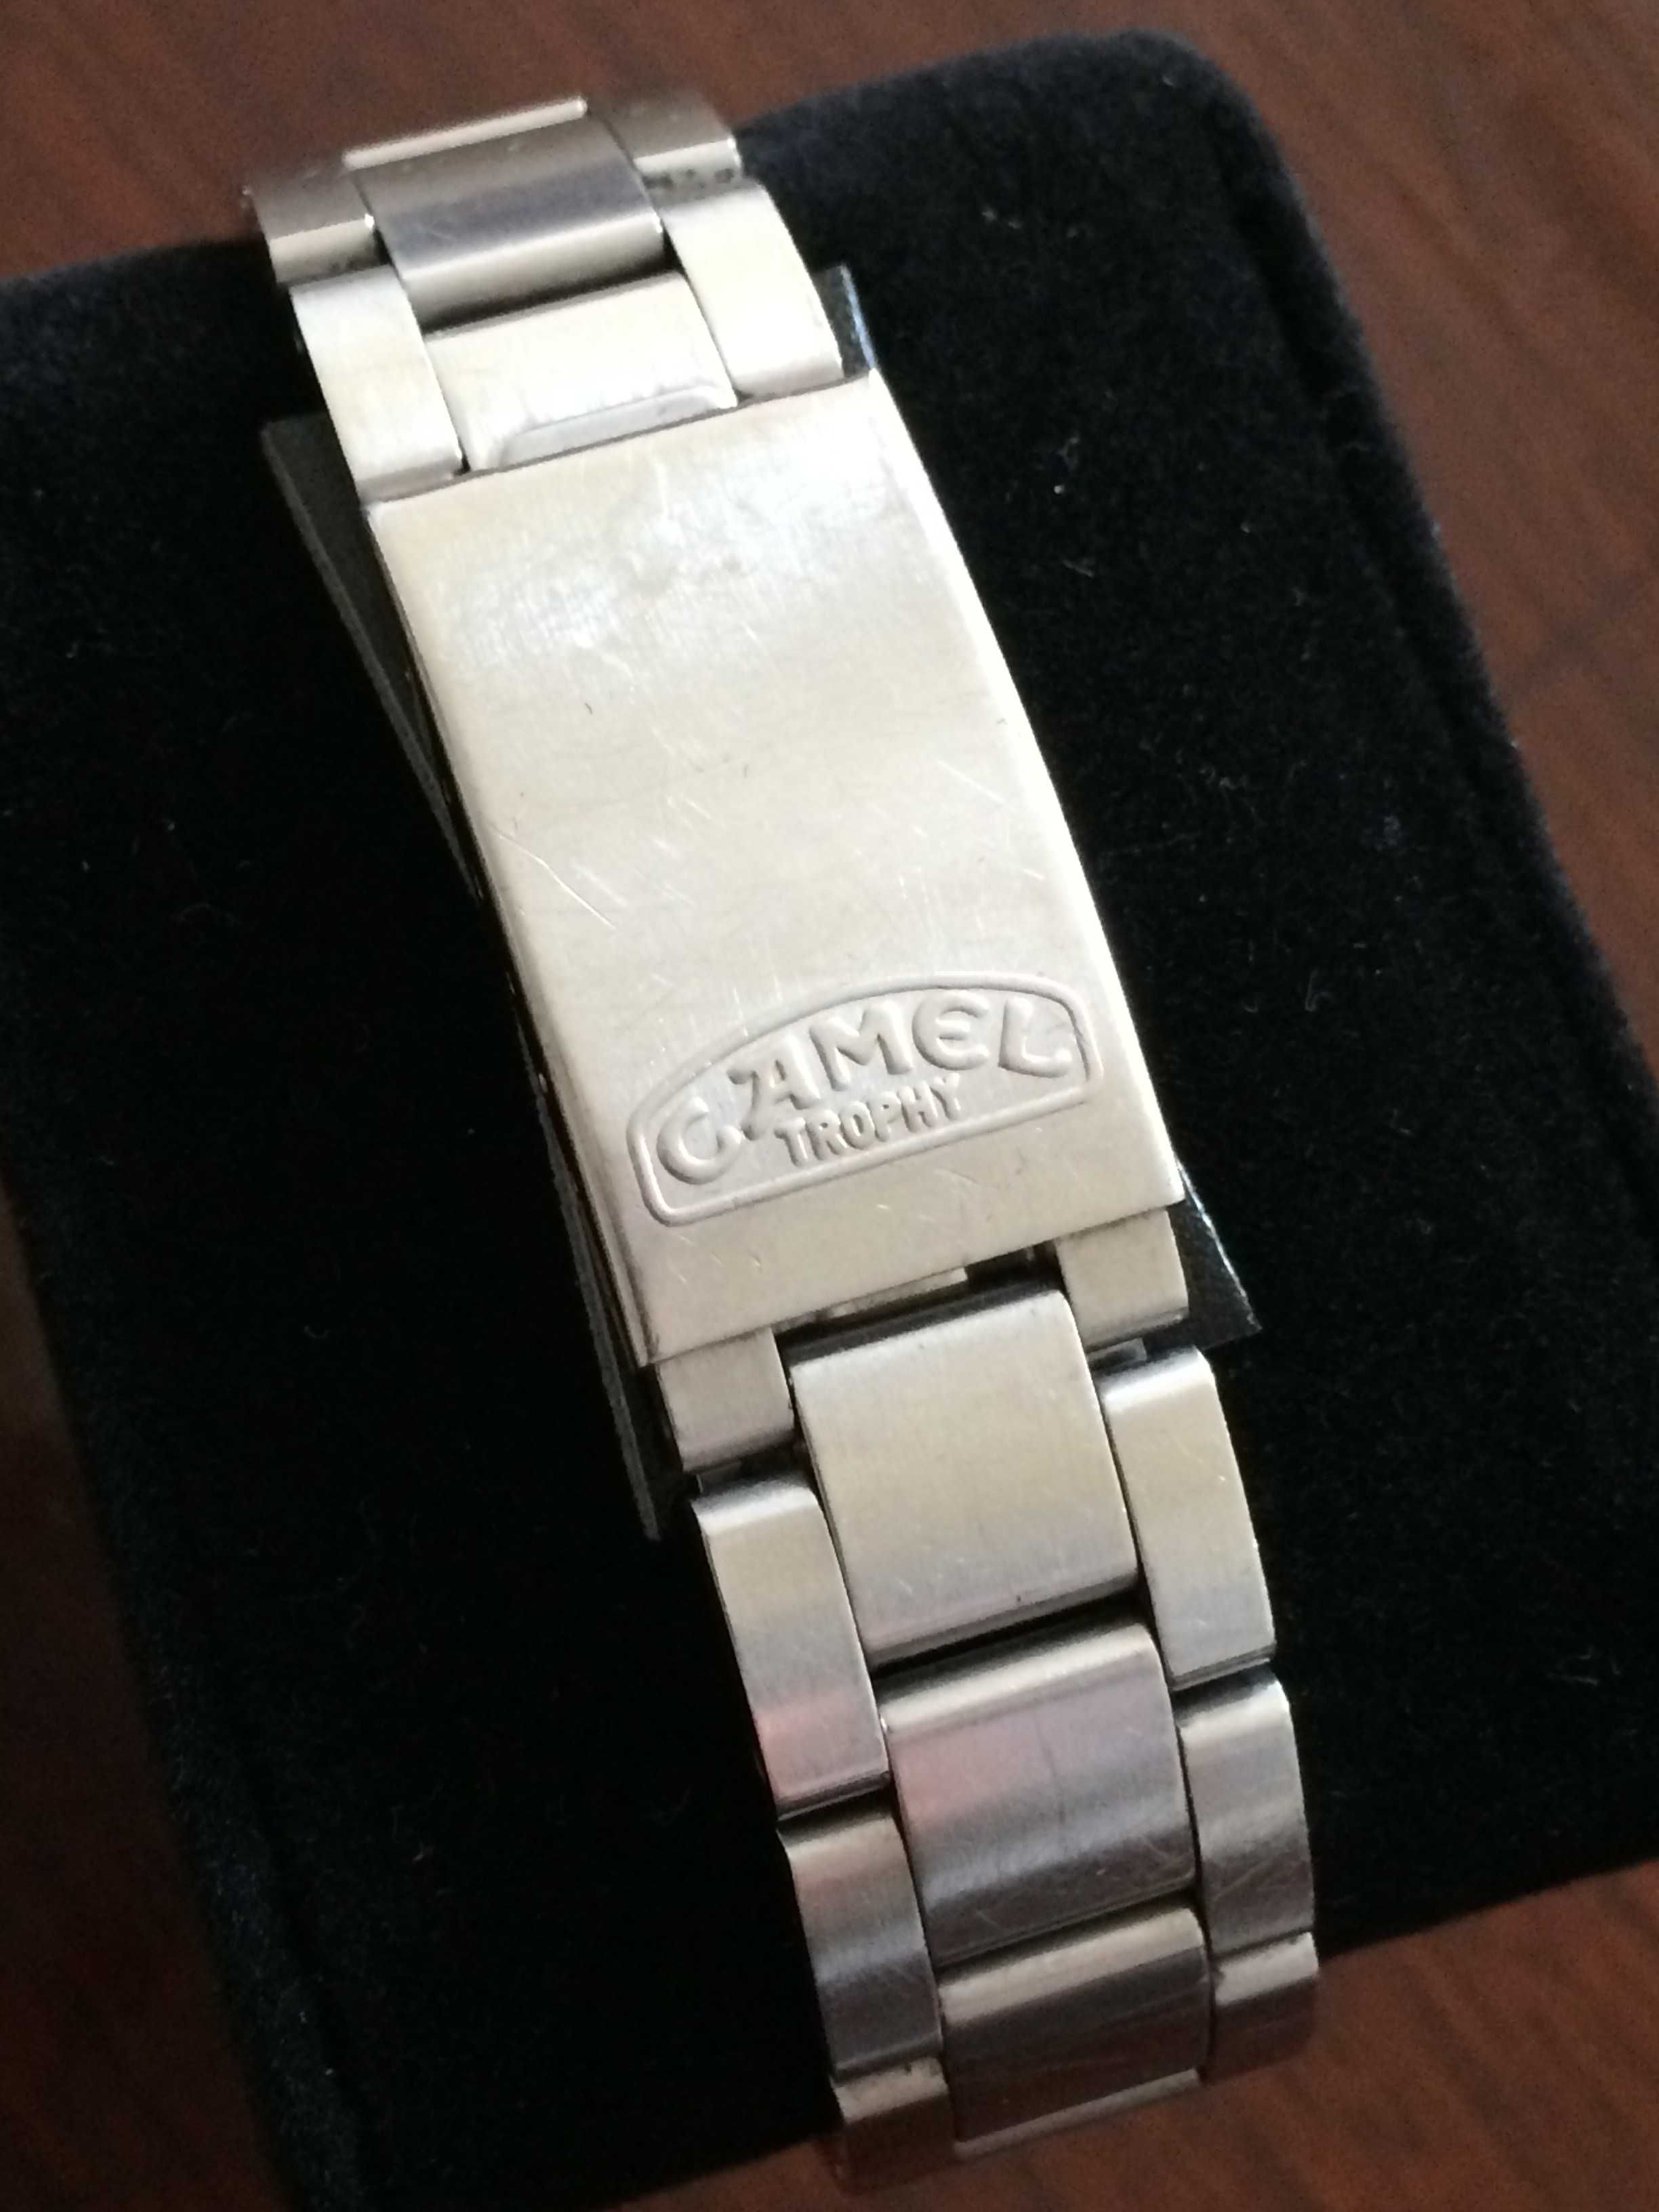 Relógio Vintage - Camel Trophy  - peça de coleção - rara